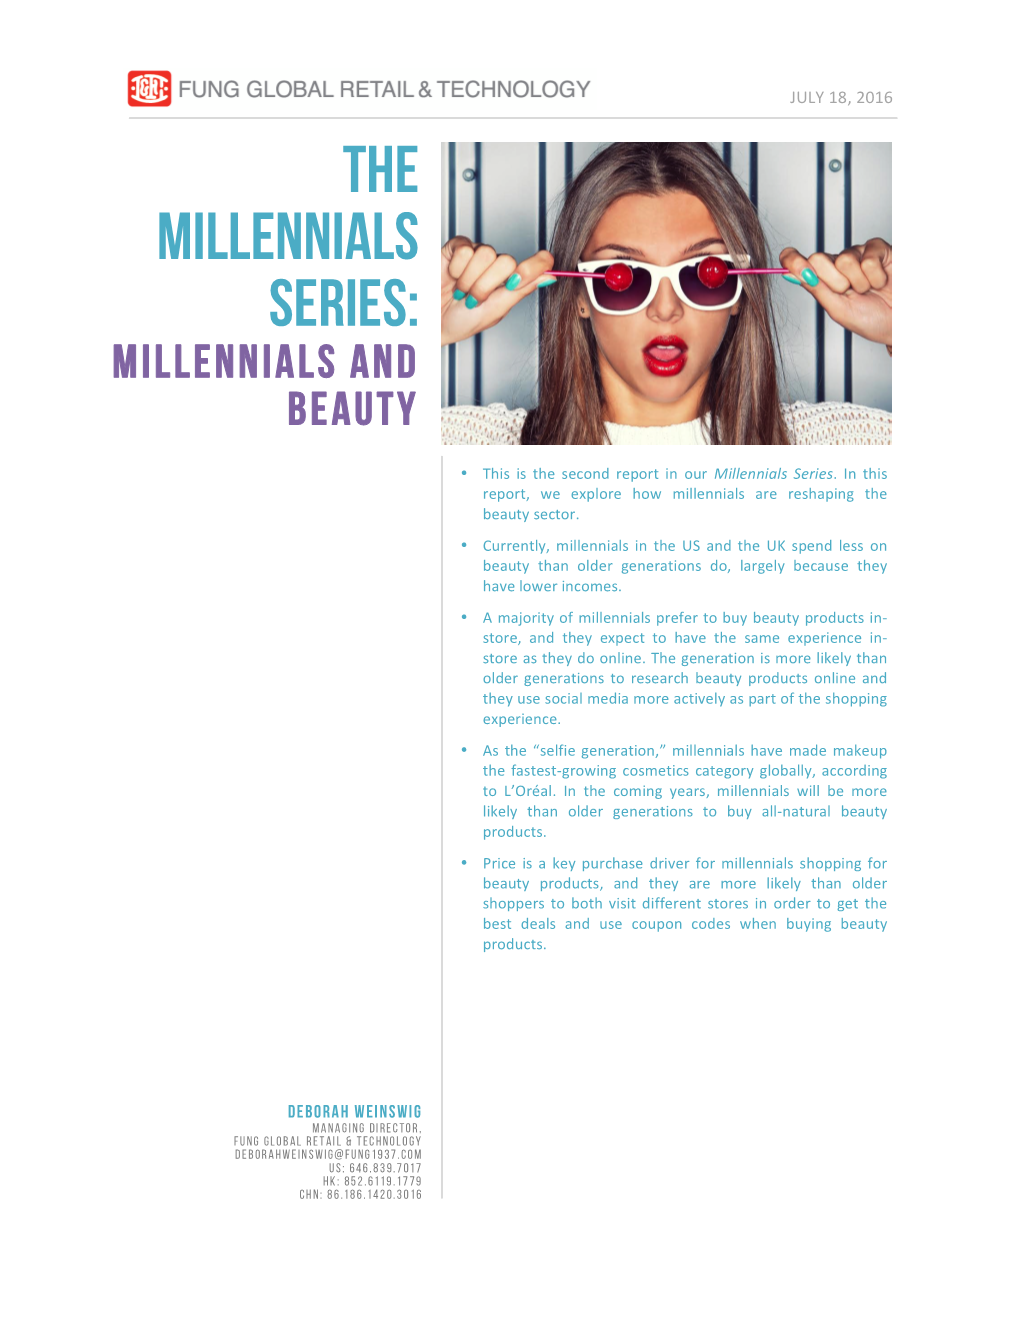 THE MILLENNIALS SERIES: Millennials and Beauty